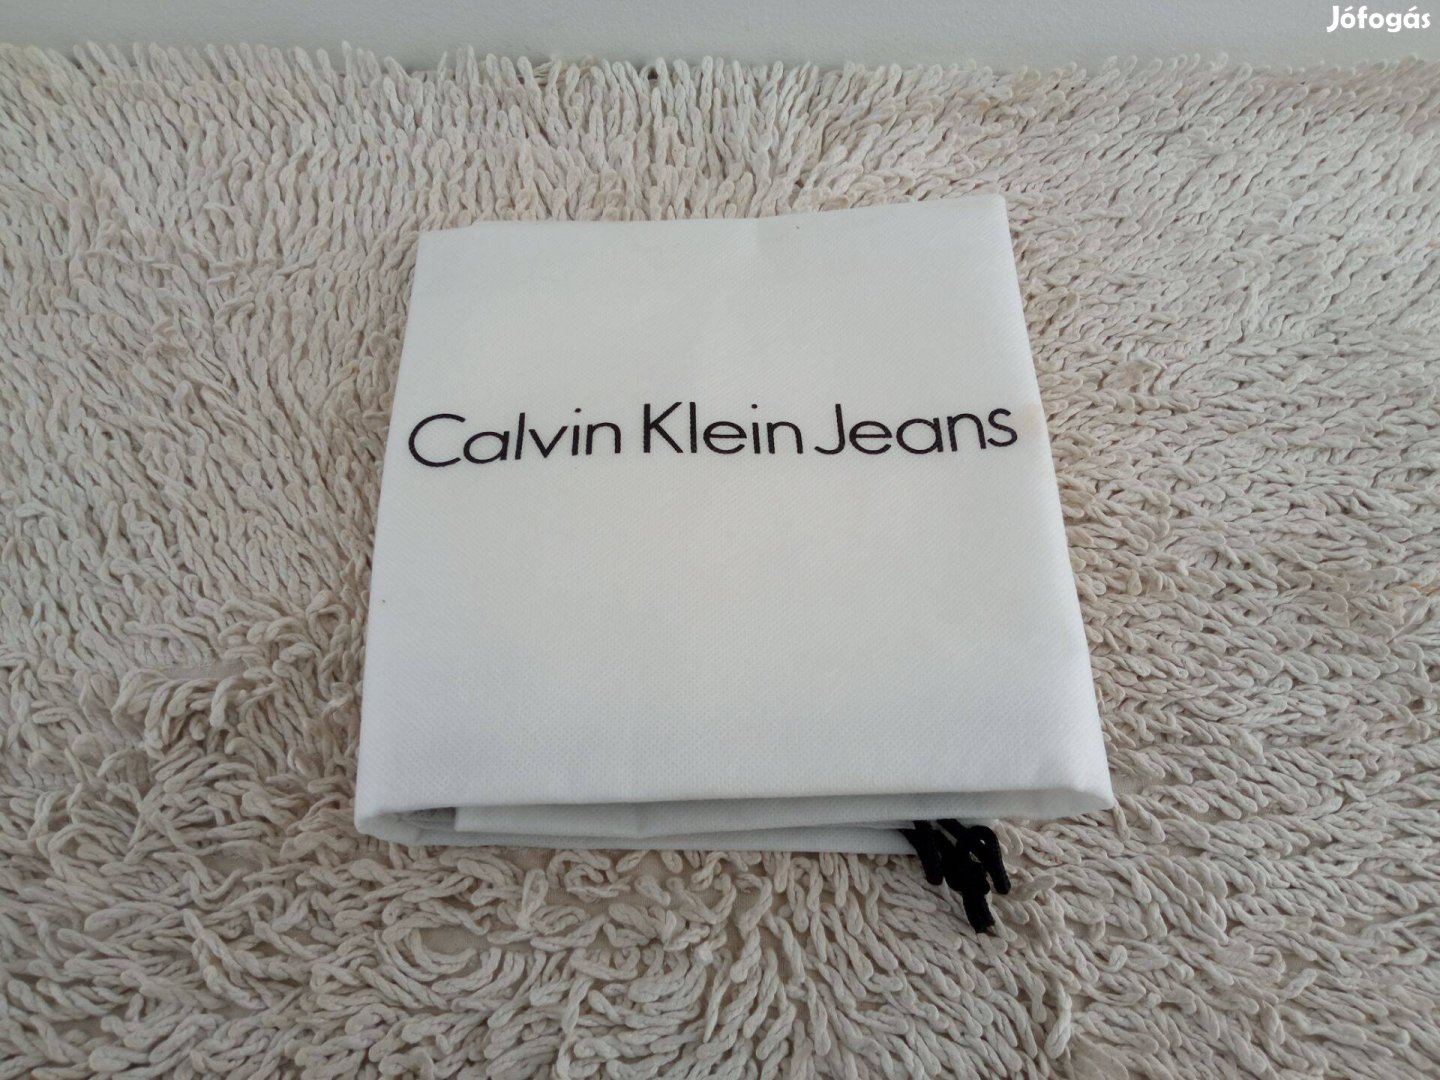 Calvin Klein Jeans légáteresztő szövet ruhazsák - fehér behúzható zsák